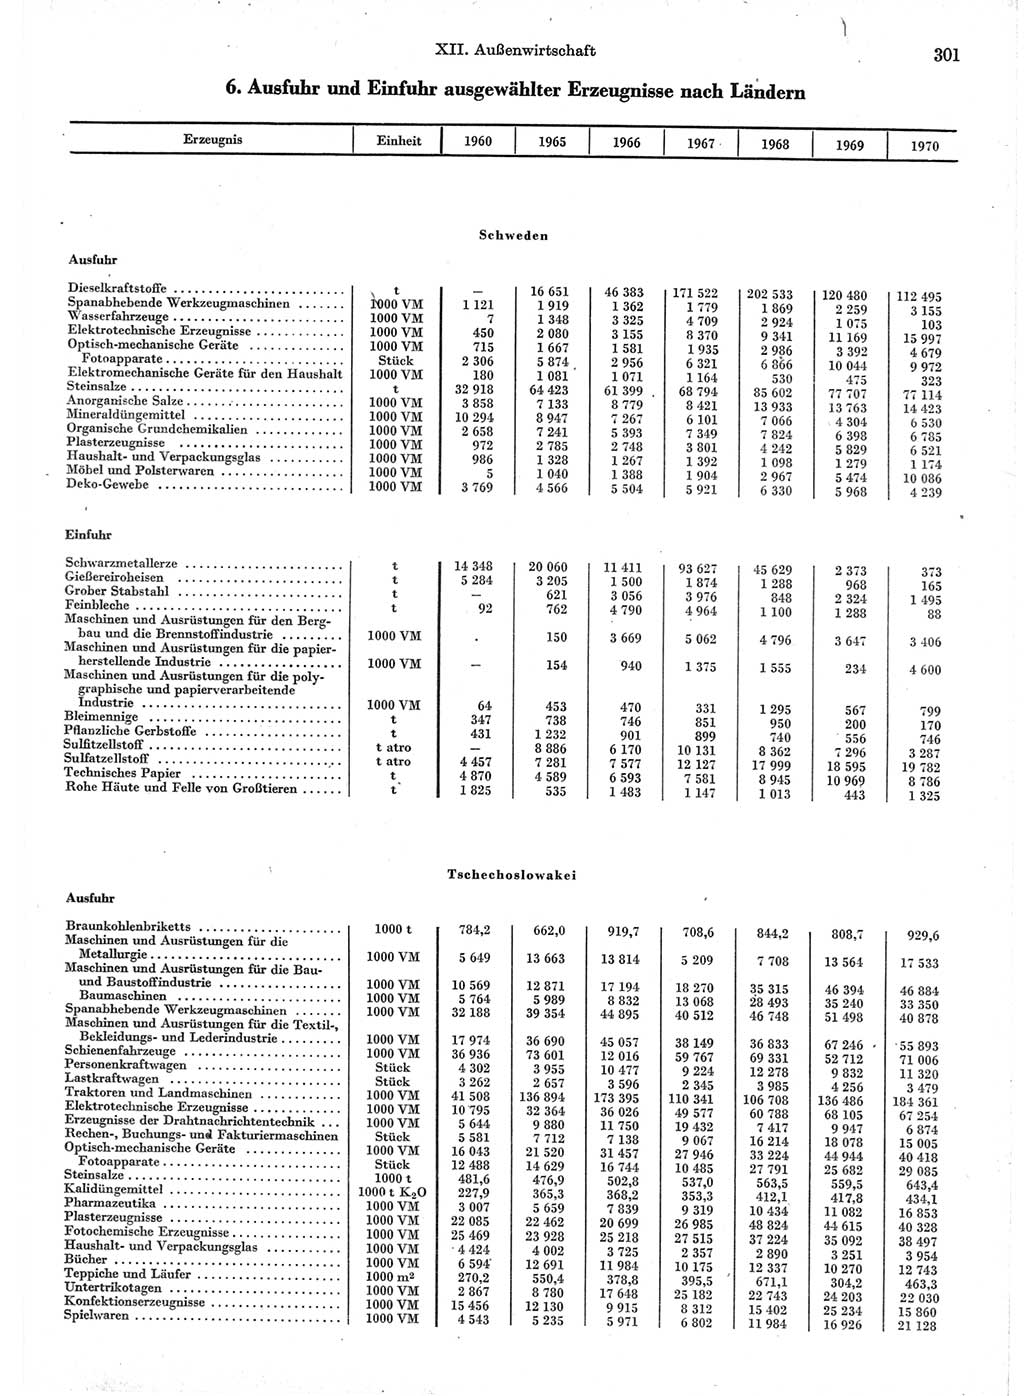 Statistisches Jahrbuch der Deutschen Demokratischen Republik (DDR) 1971, Seite 301 (Stat. Jb. DDR 1971, S. 301)